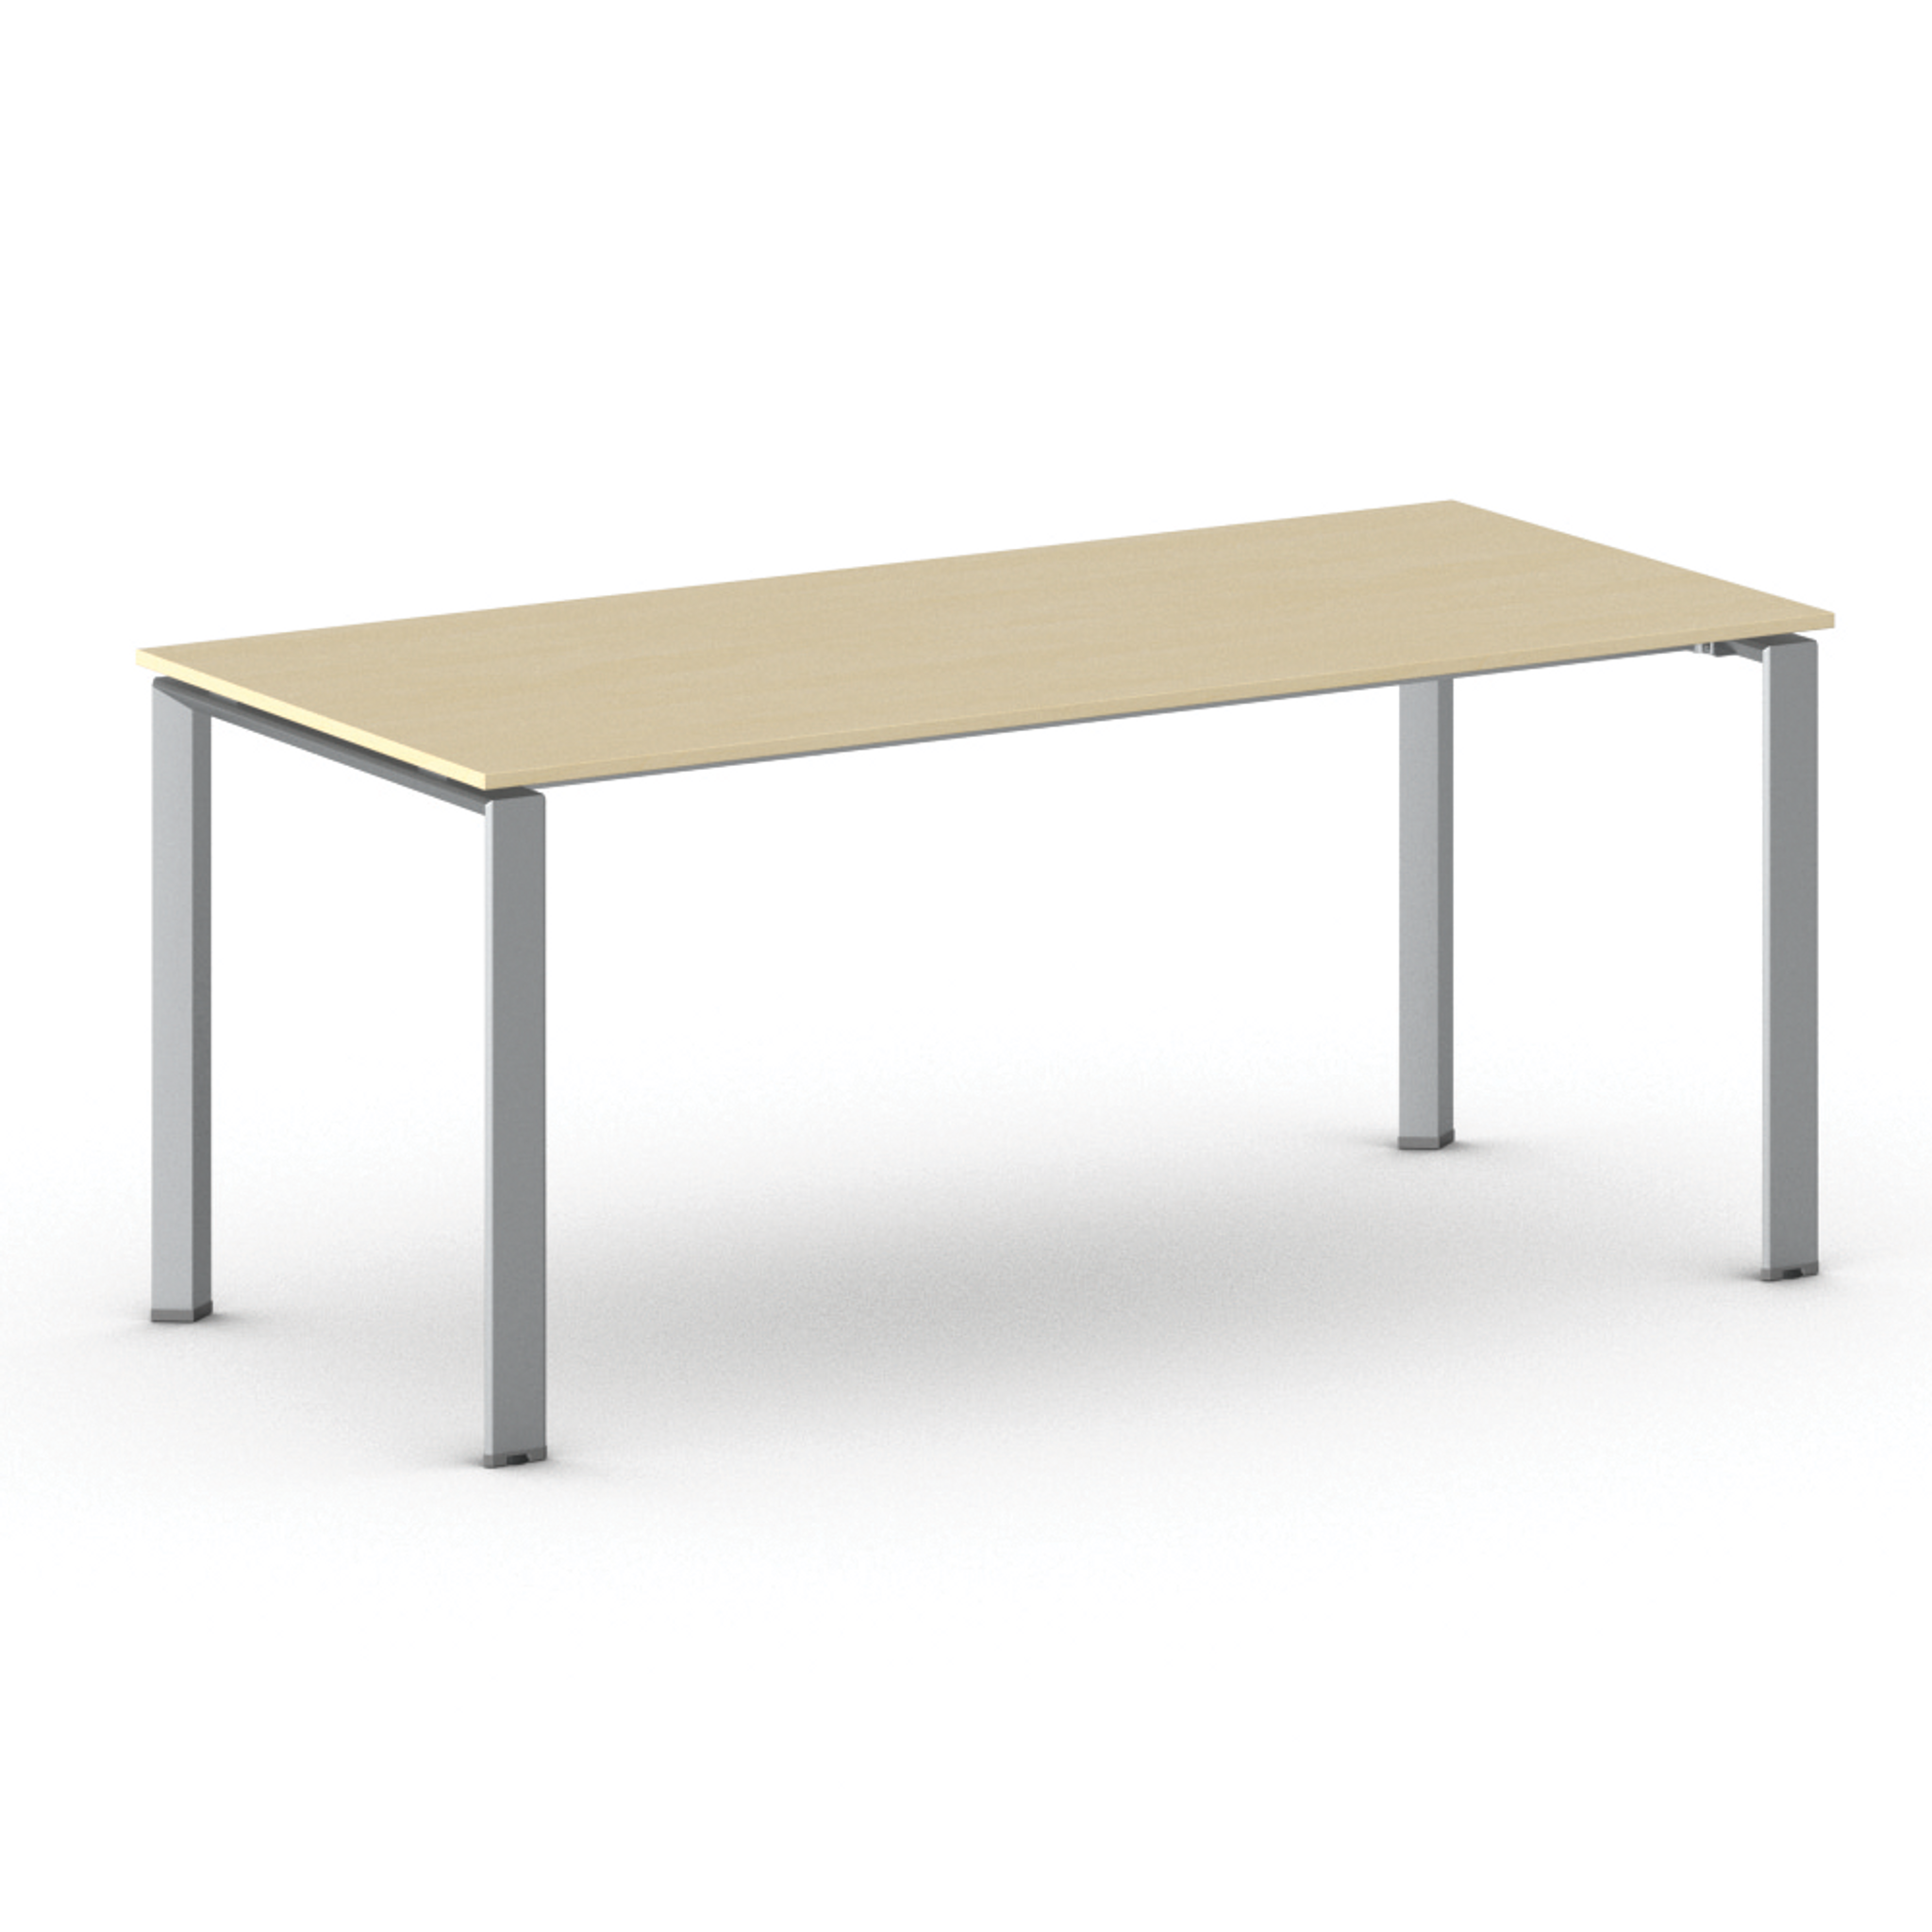 Konferenztisch, Besprechungstisch INFINITY 180x90 cm, graues Fußgestell